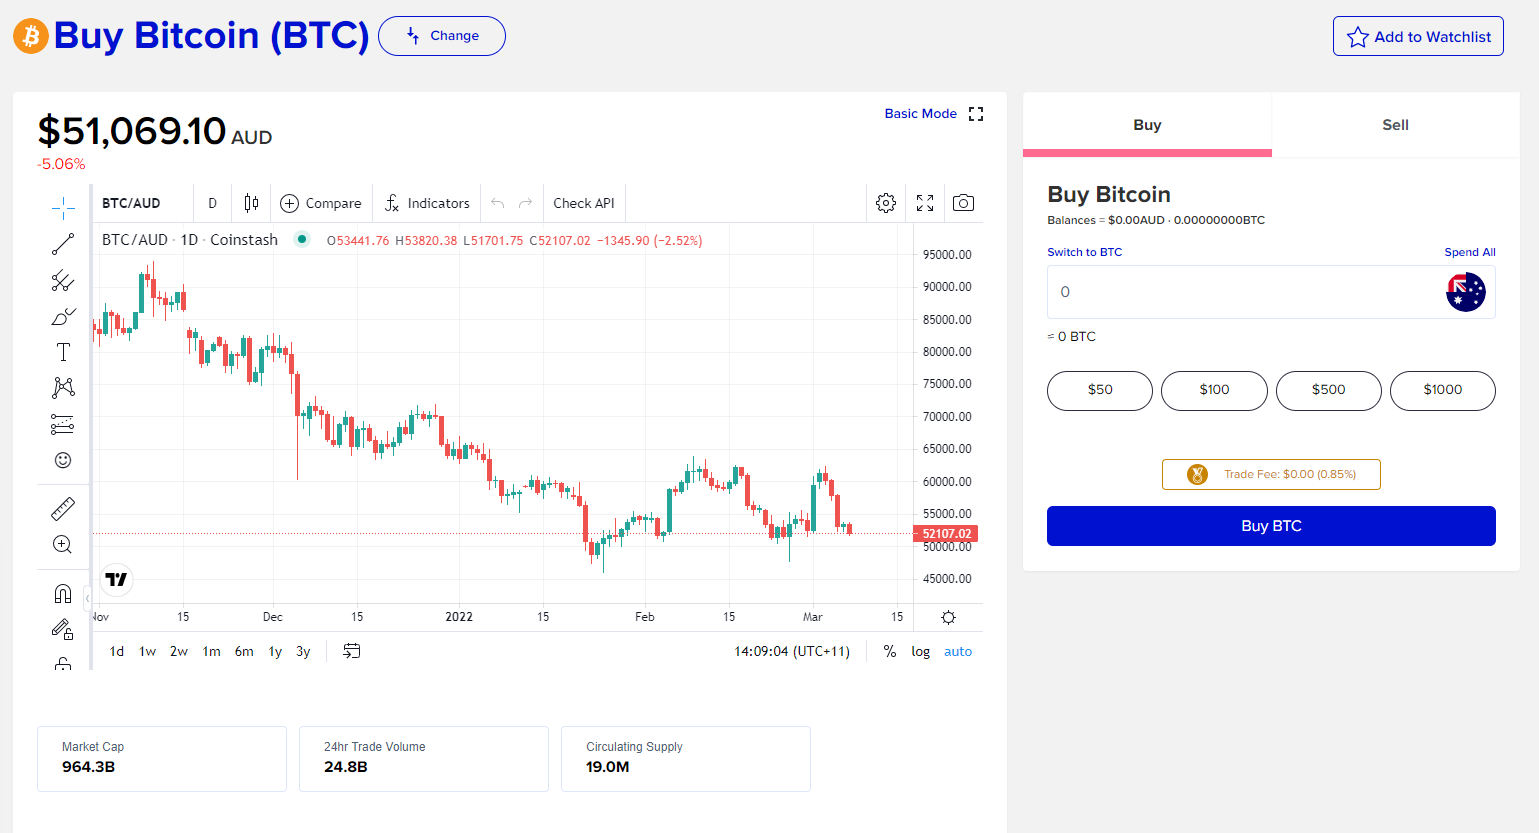 coinstash advanced trading interface